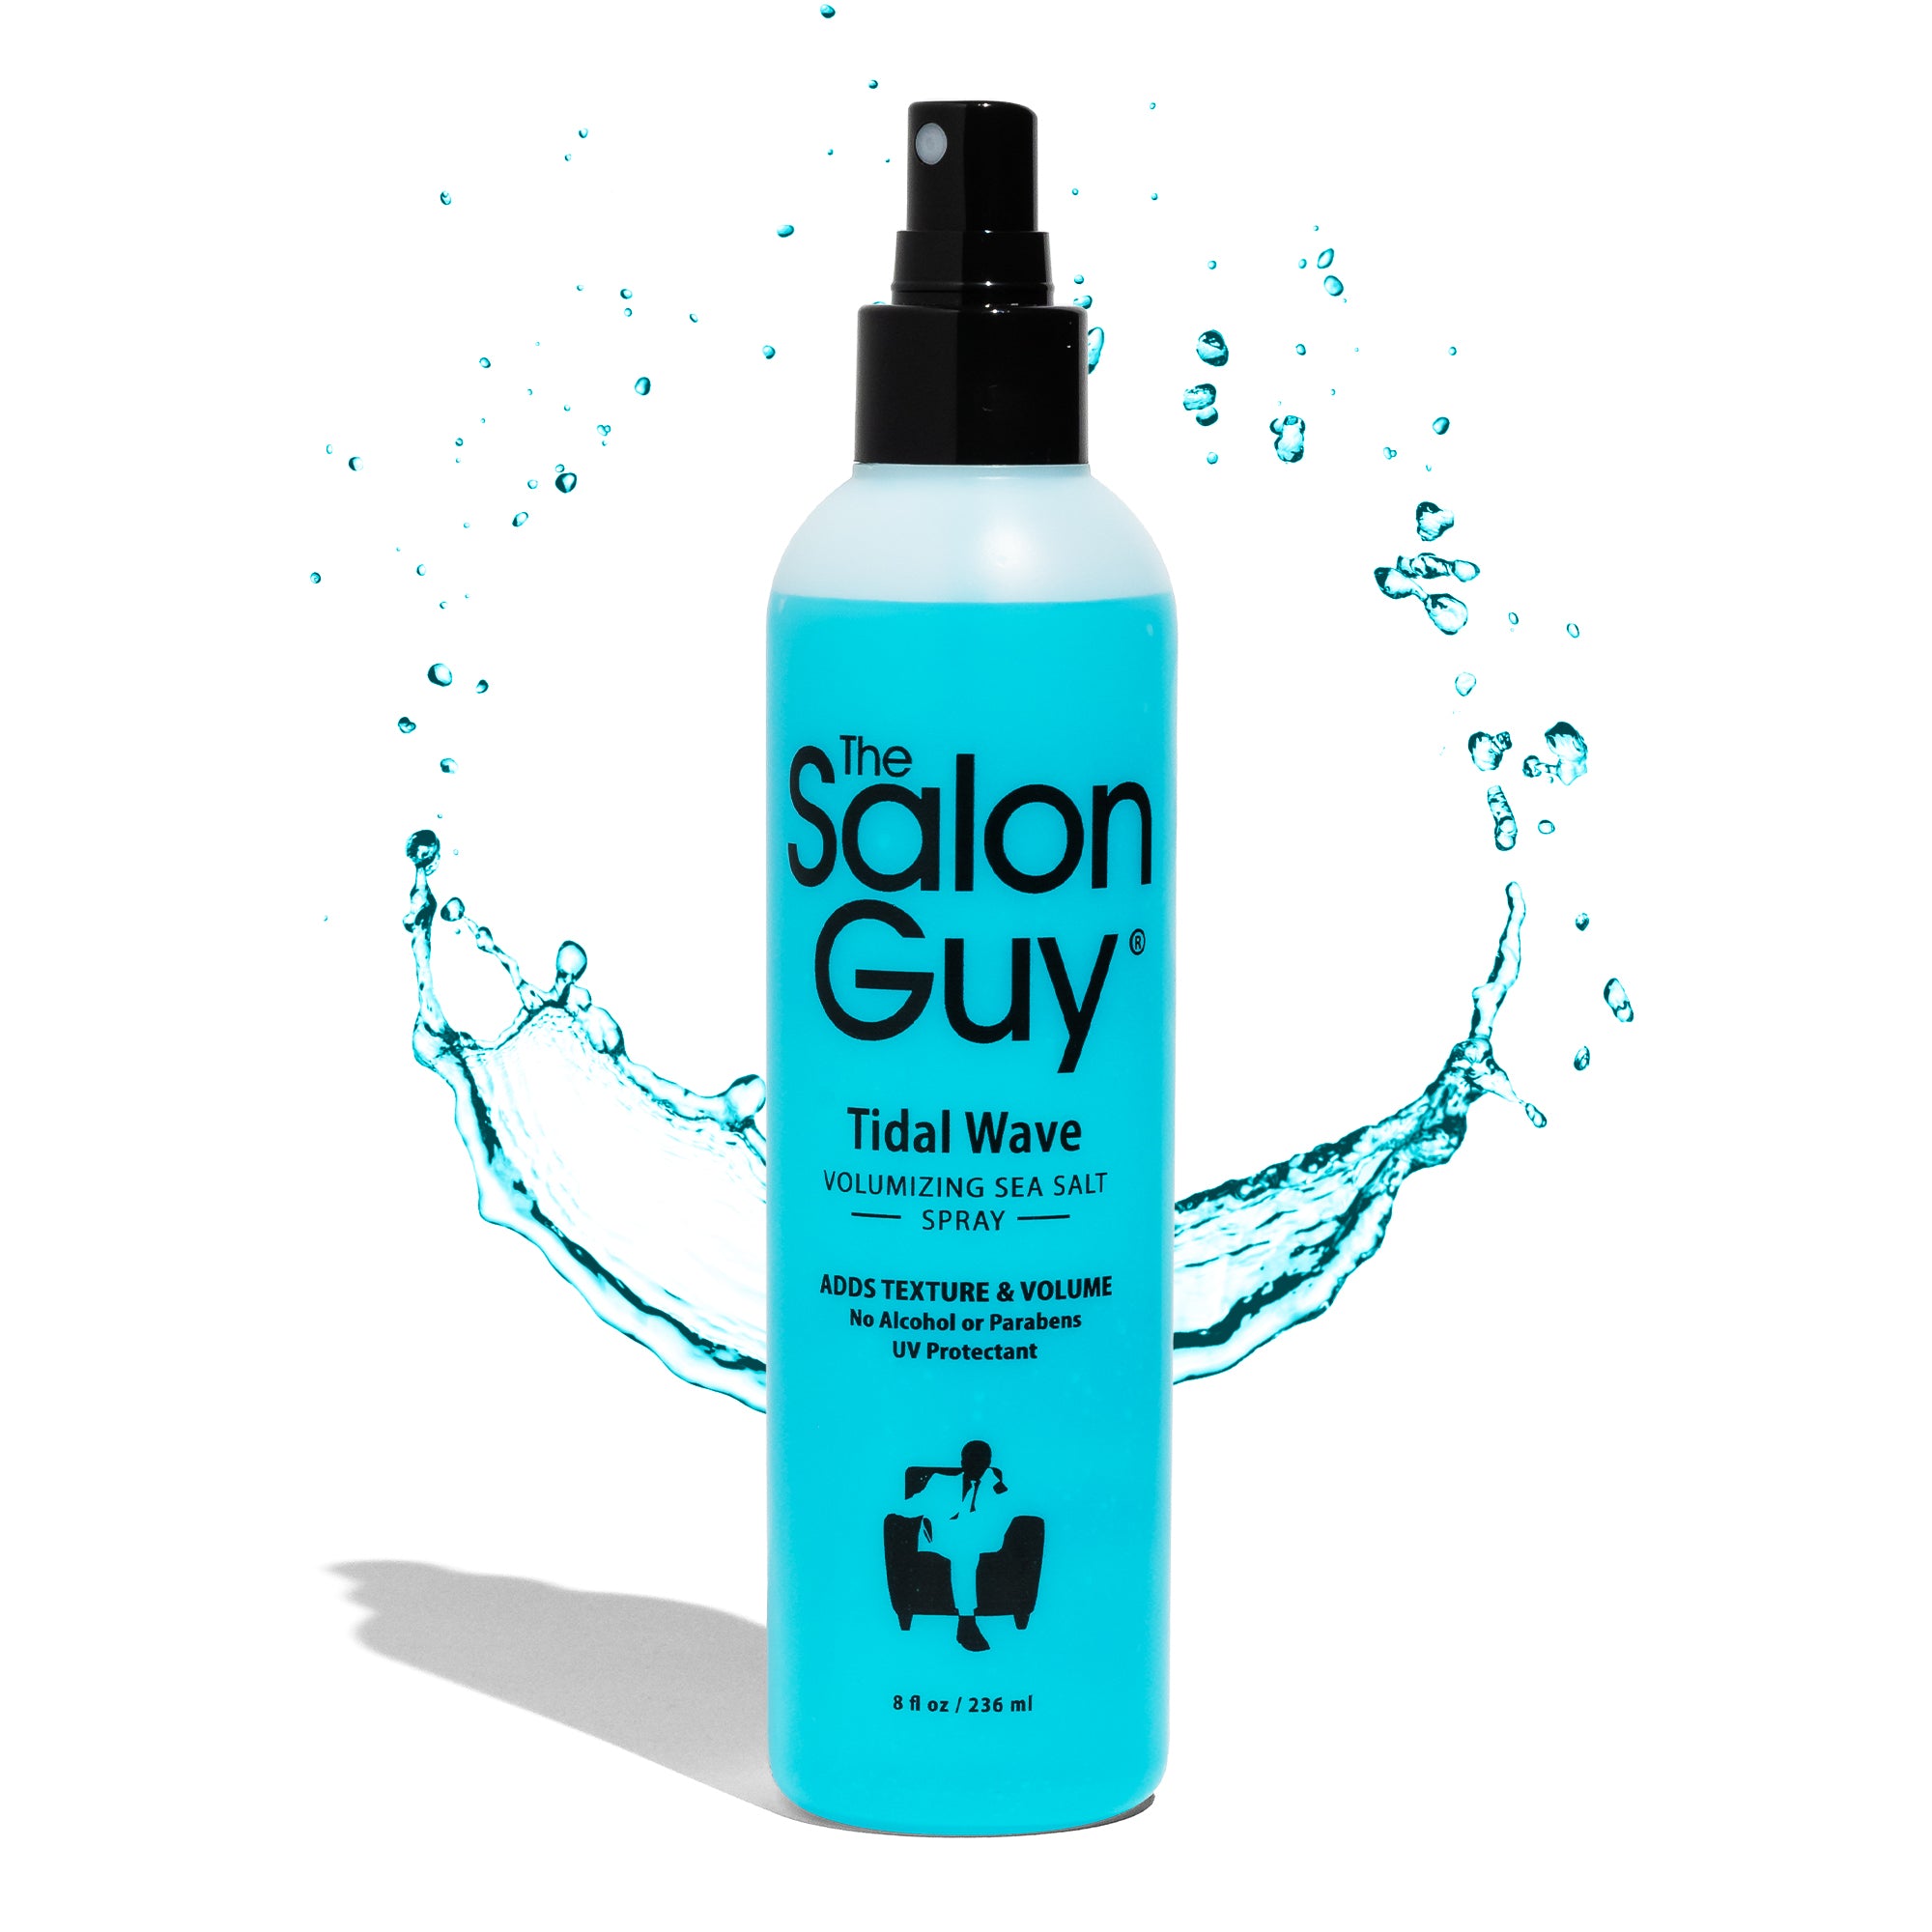  CNNY Sea Salt Spray 5.3 oz with Strong Hold Hair